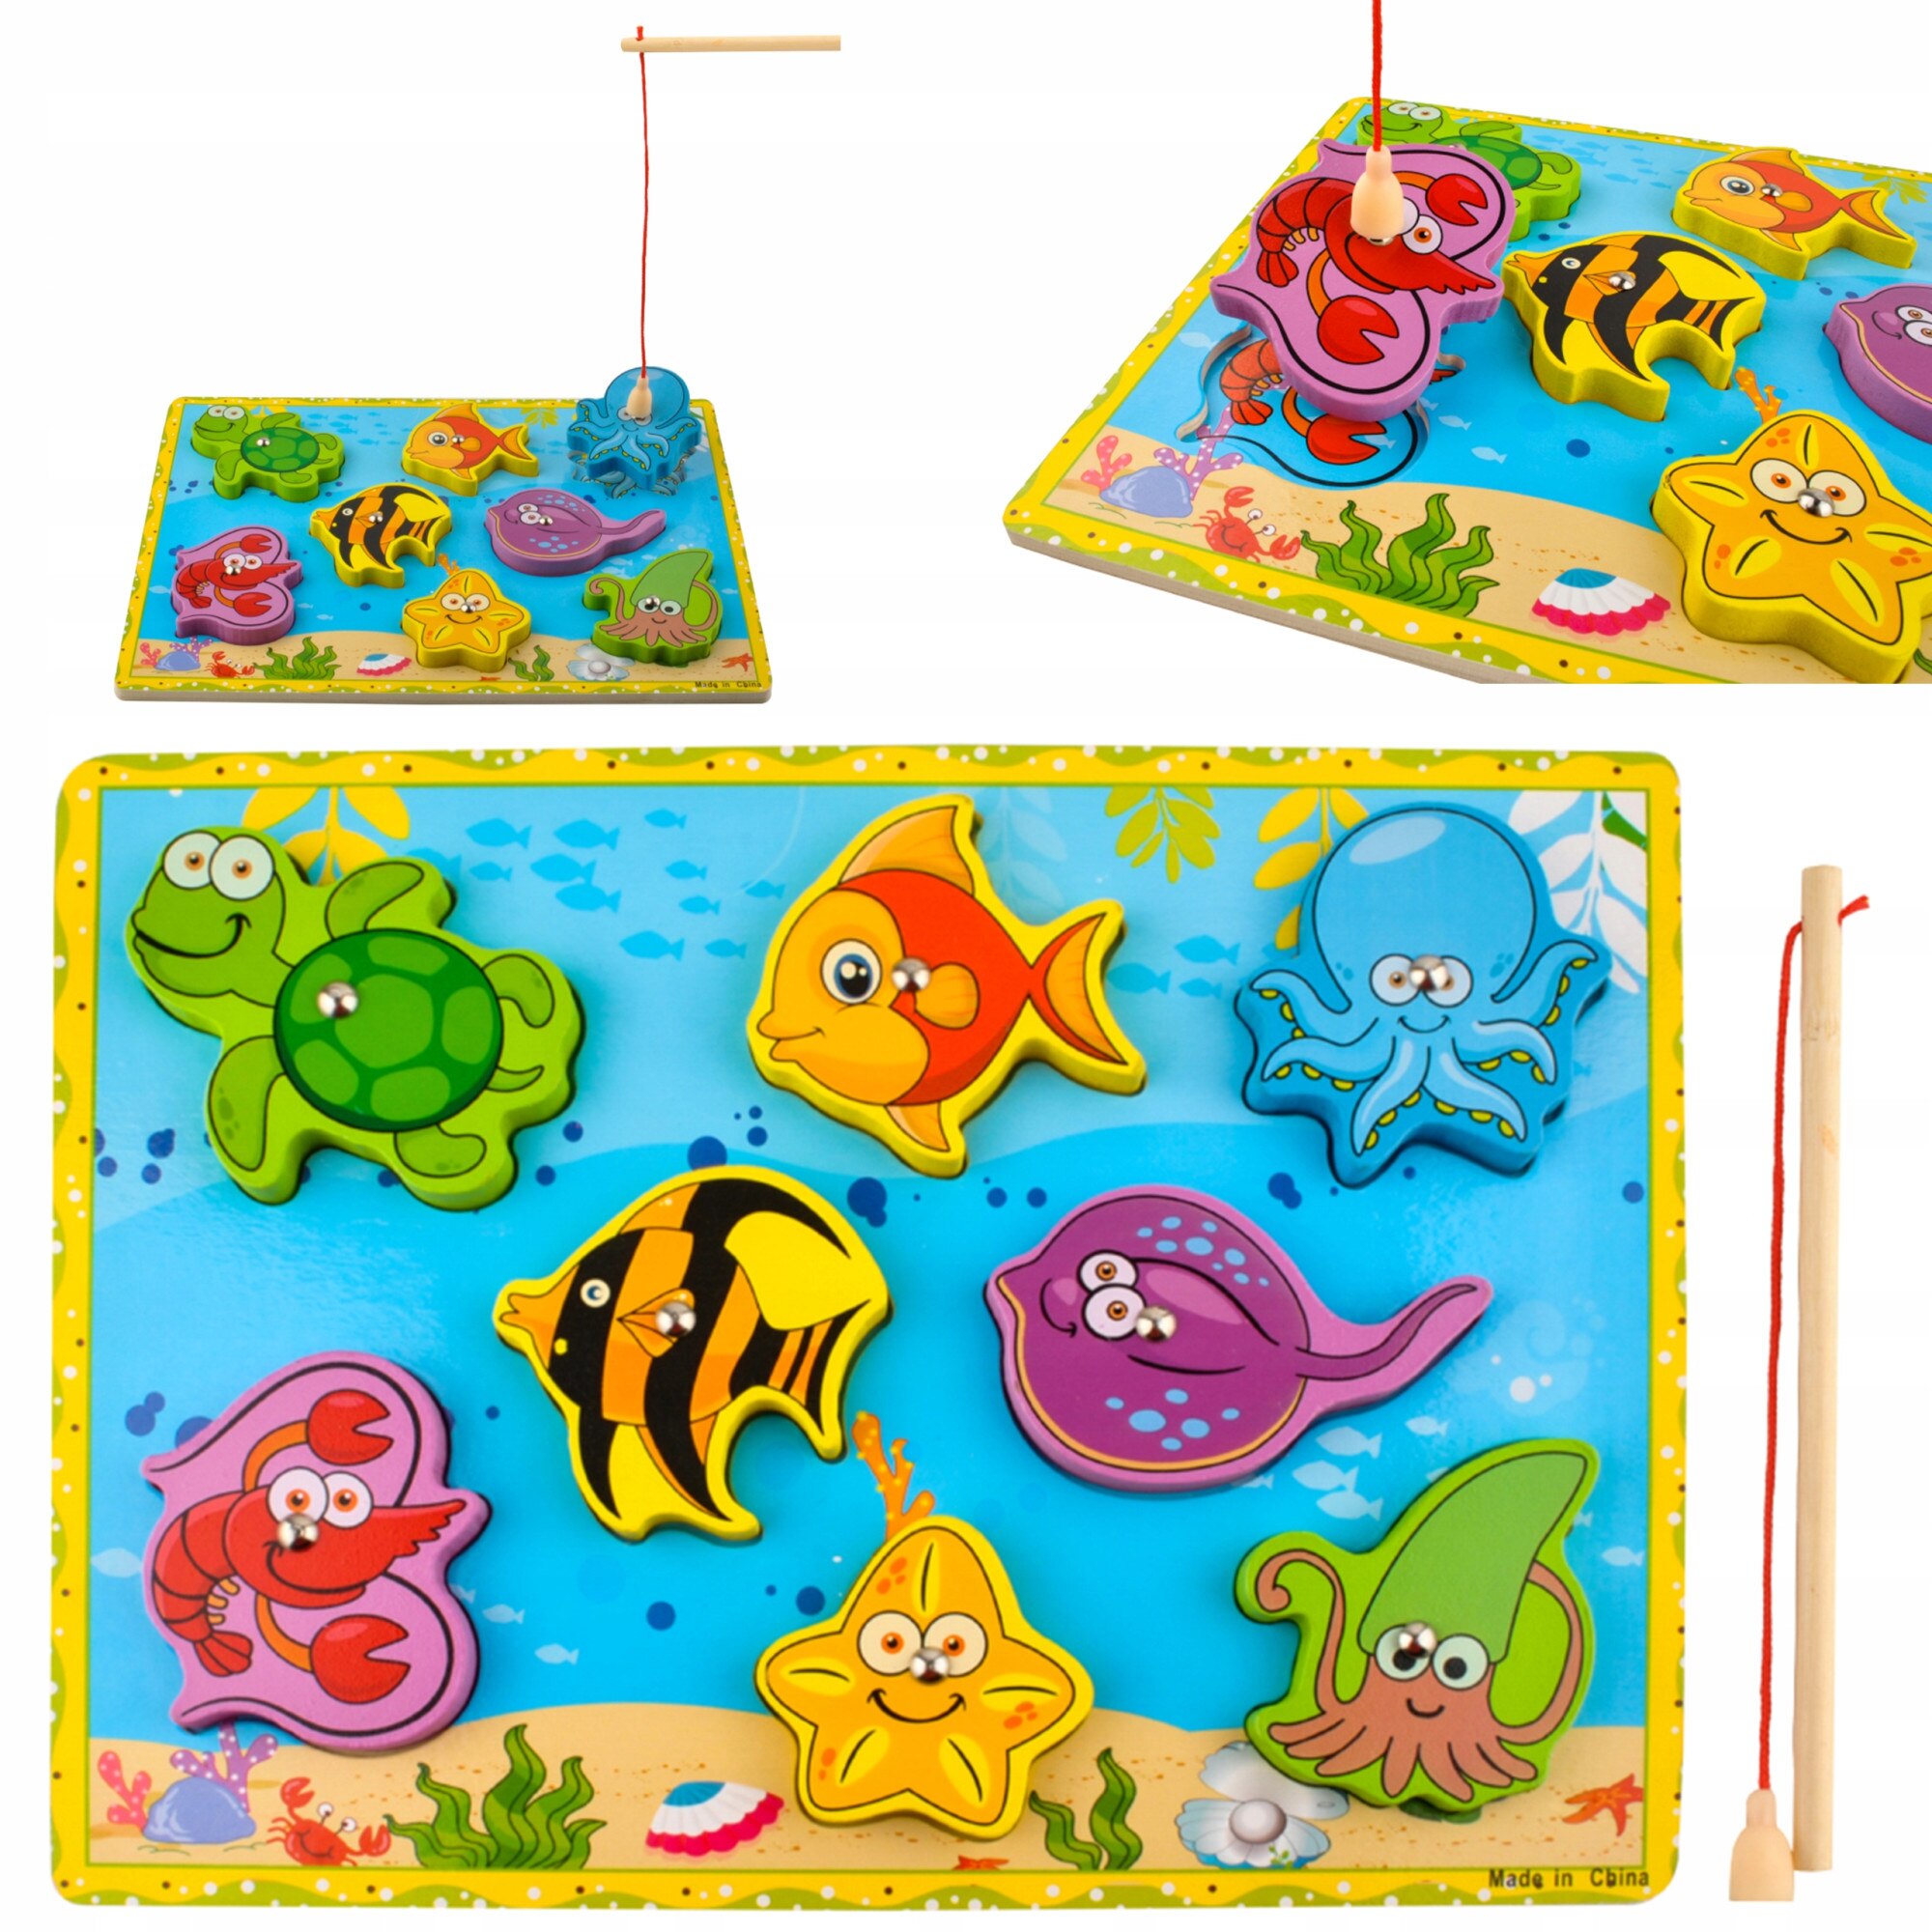 Set de pescuit, undita pentru copii cu accesorii, pestisori si diverse  animale acvatice, 13073 - Vivre